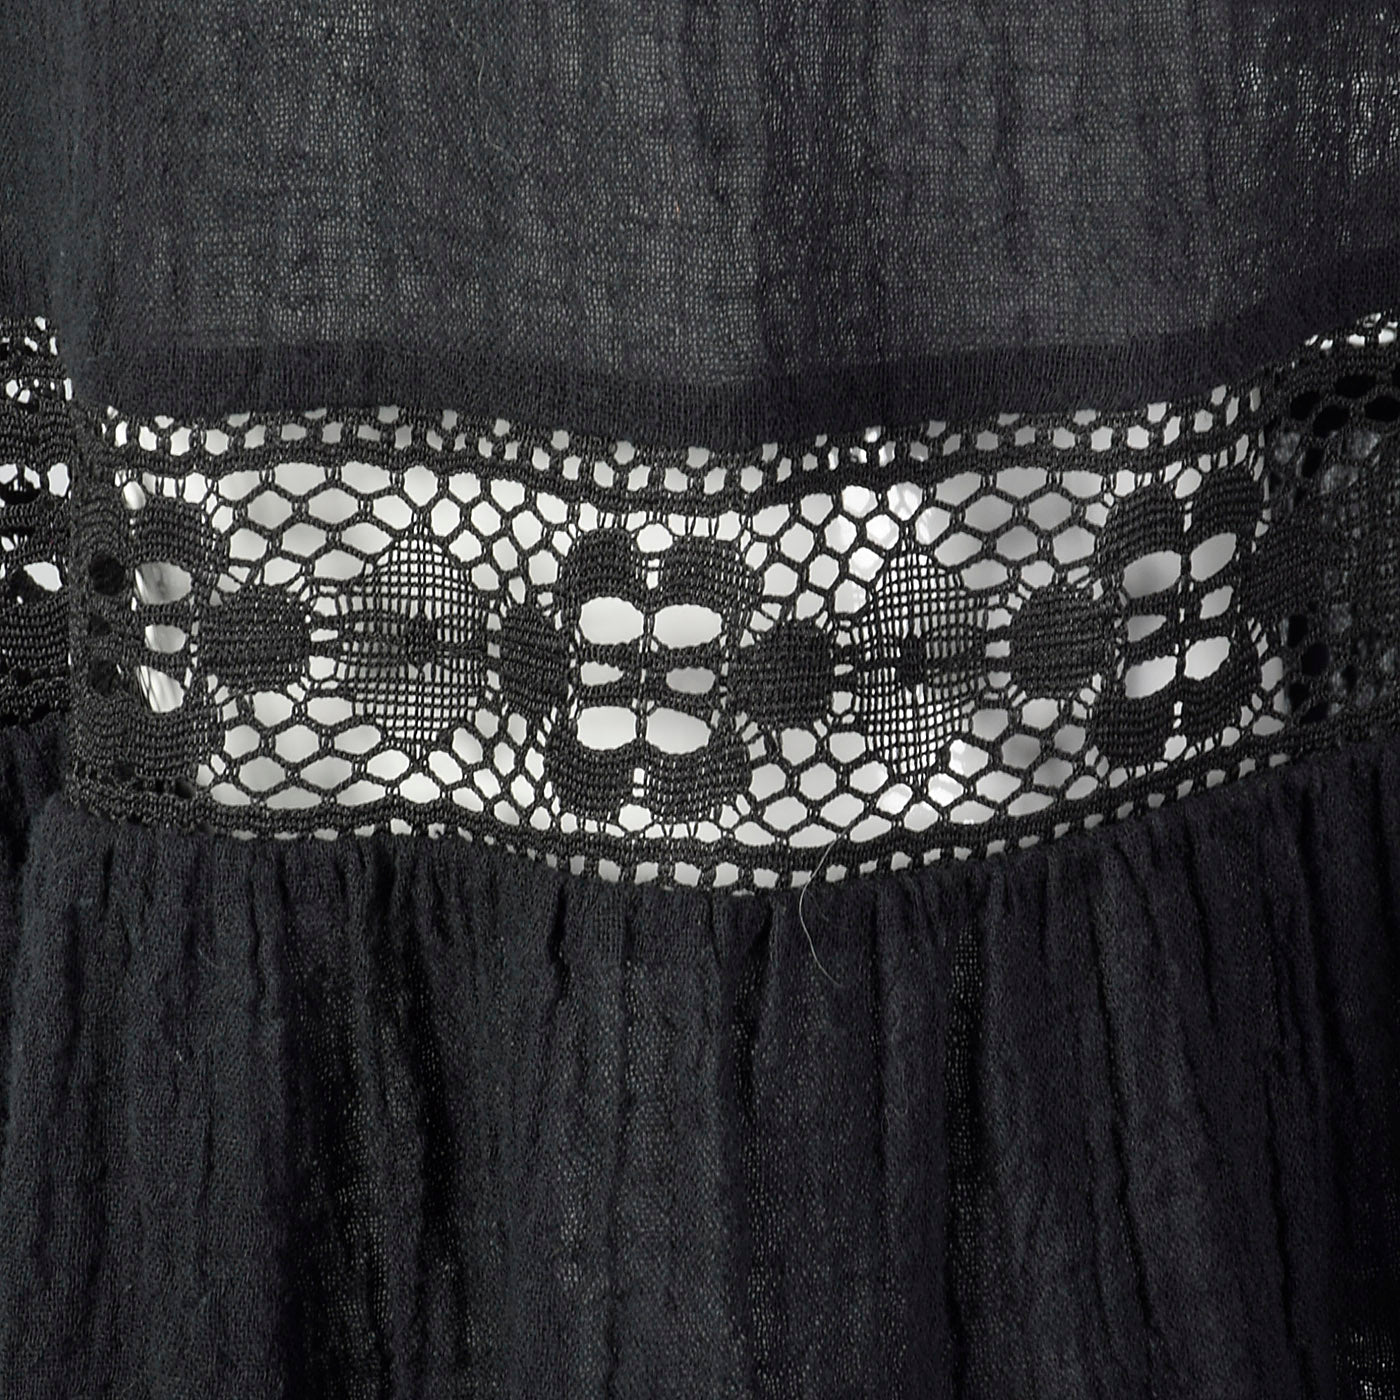 1970s Black Gauze Dress with Lace Trim